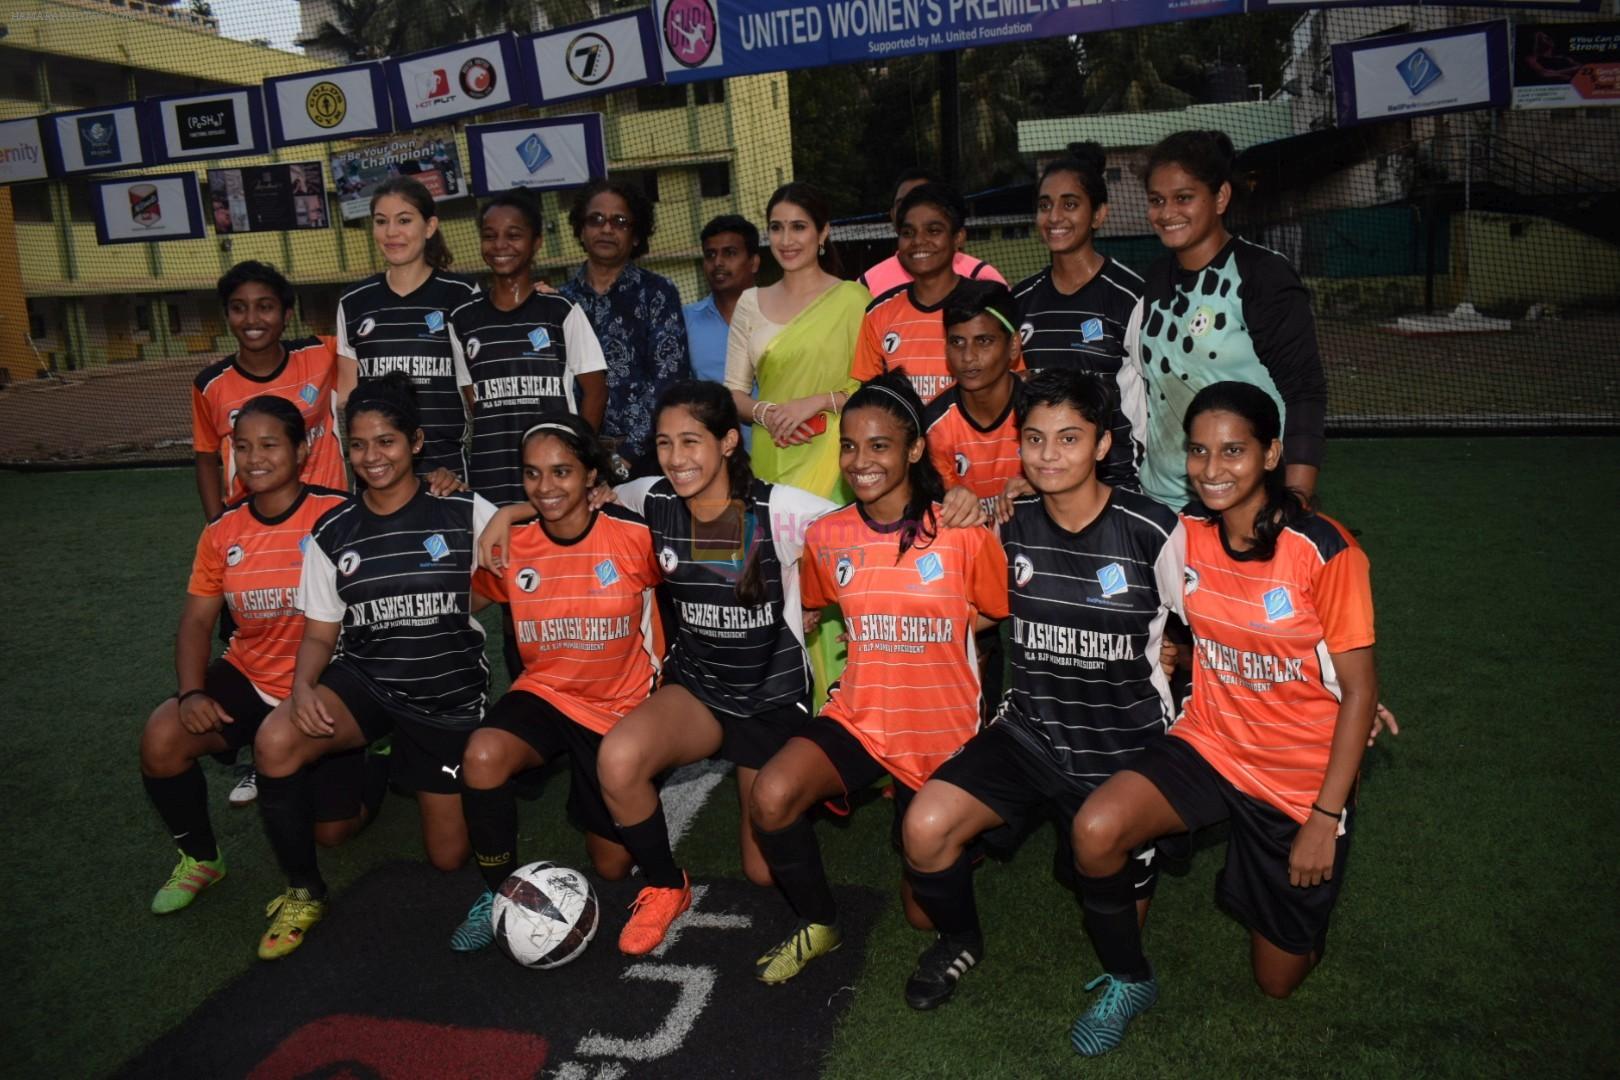 Sagarika Ghatge at women's football league in khar ,mumbai on 13th May 2018